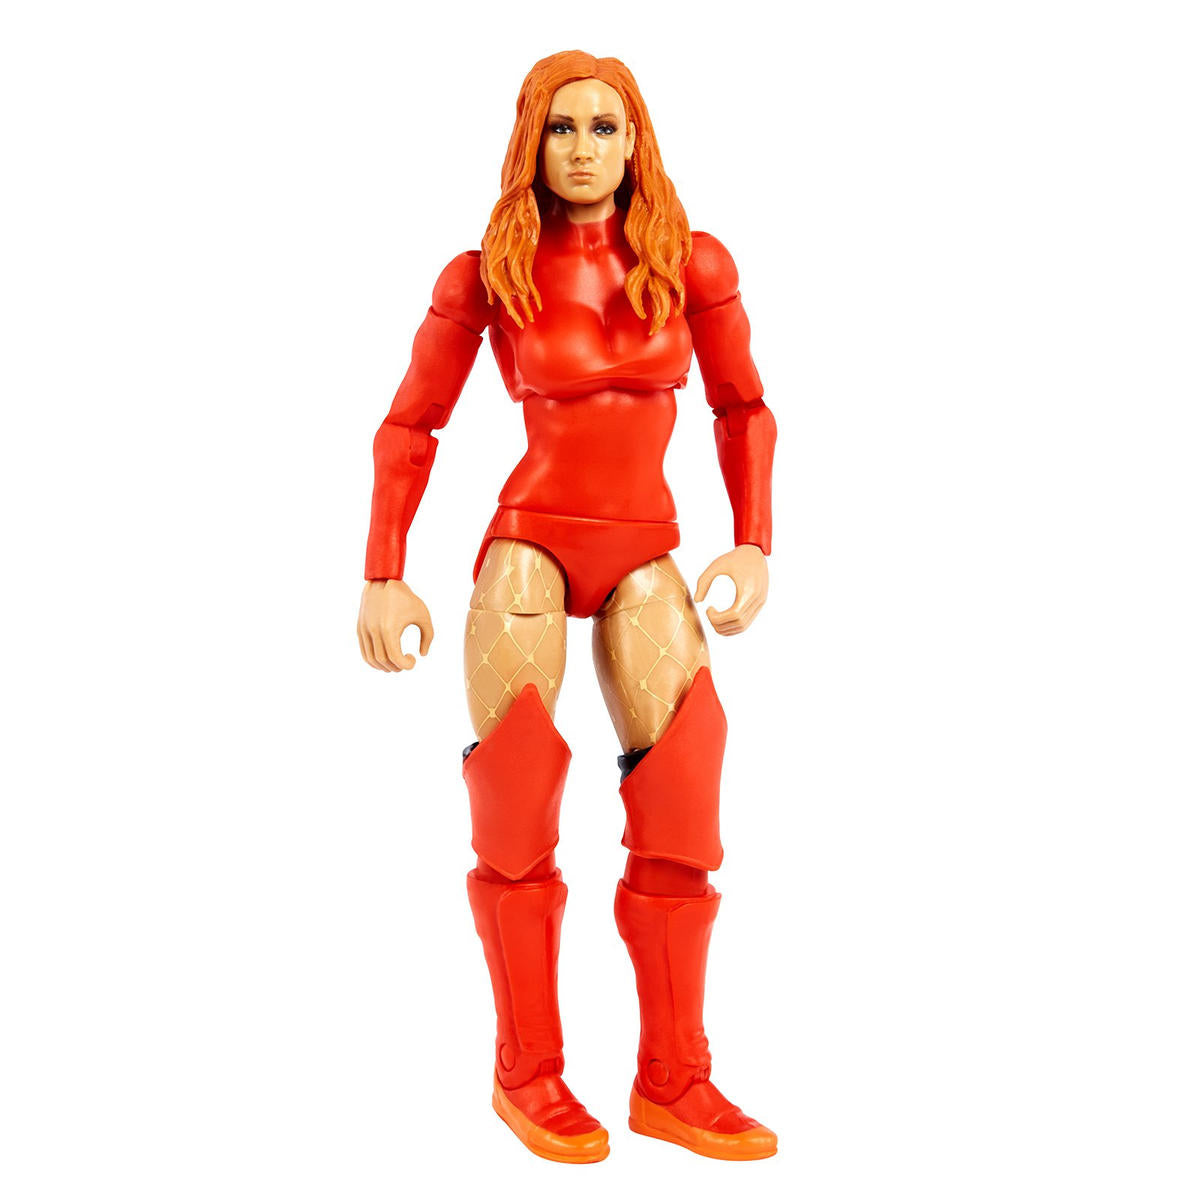 2022 WWE Mattel Elite Collection Survivor Series 5 Becky Lynch